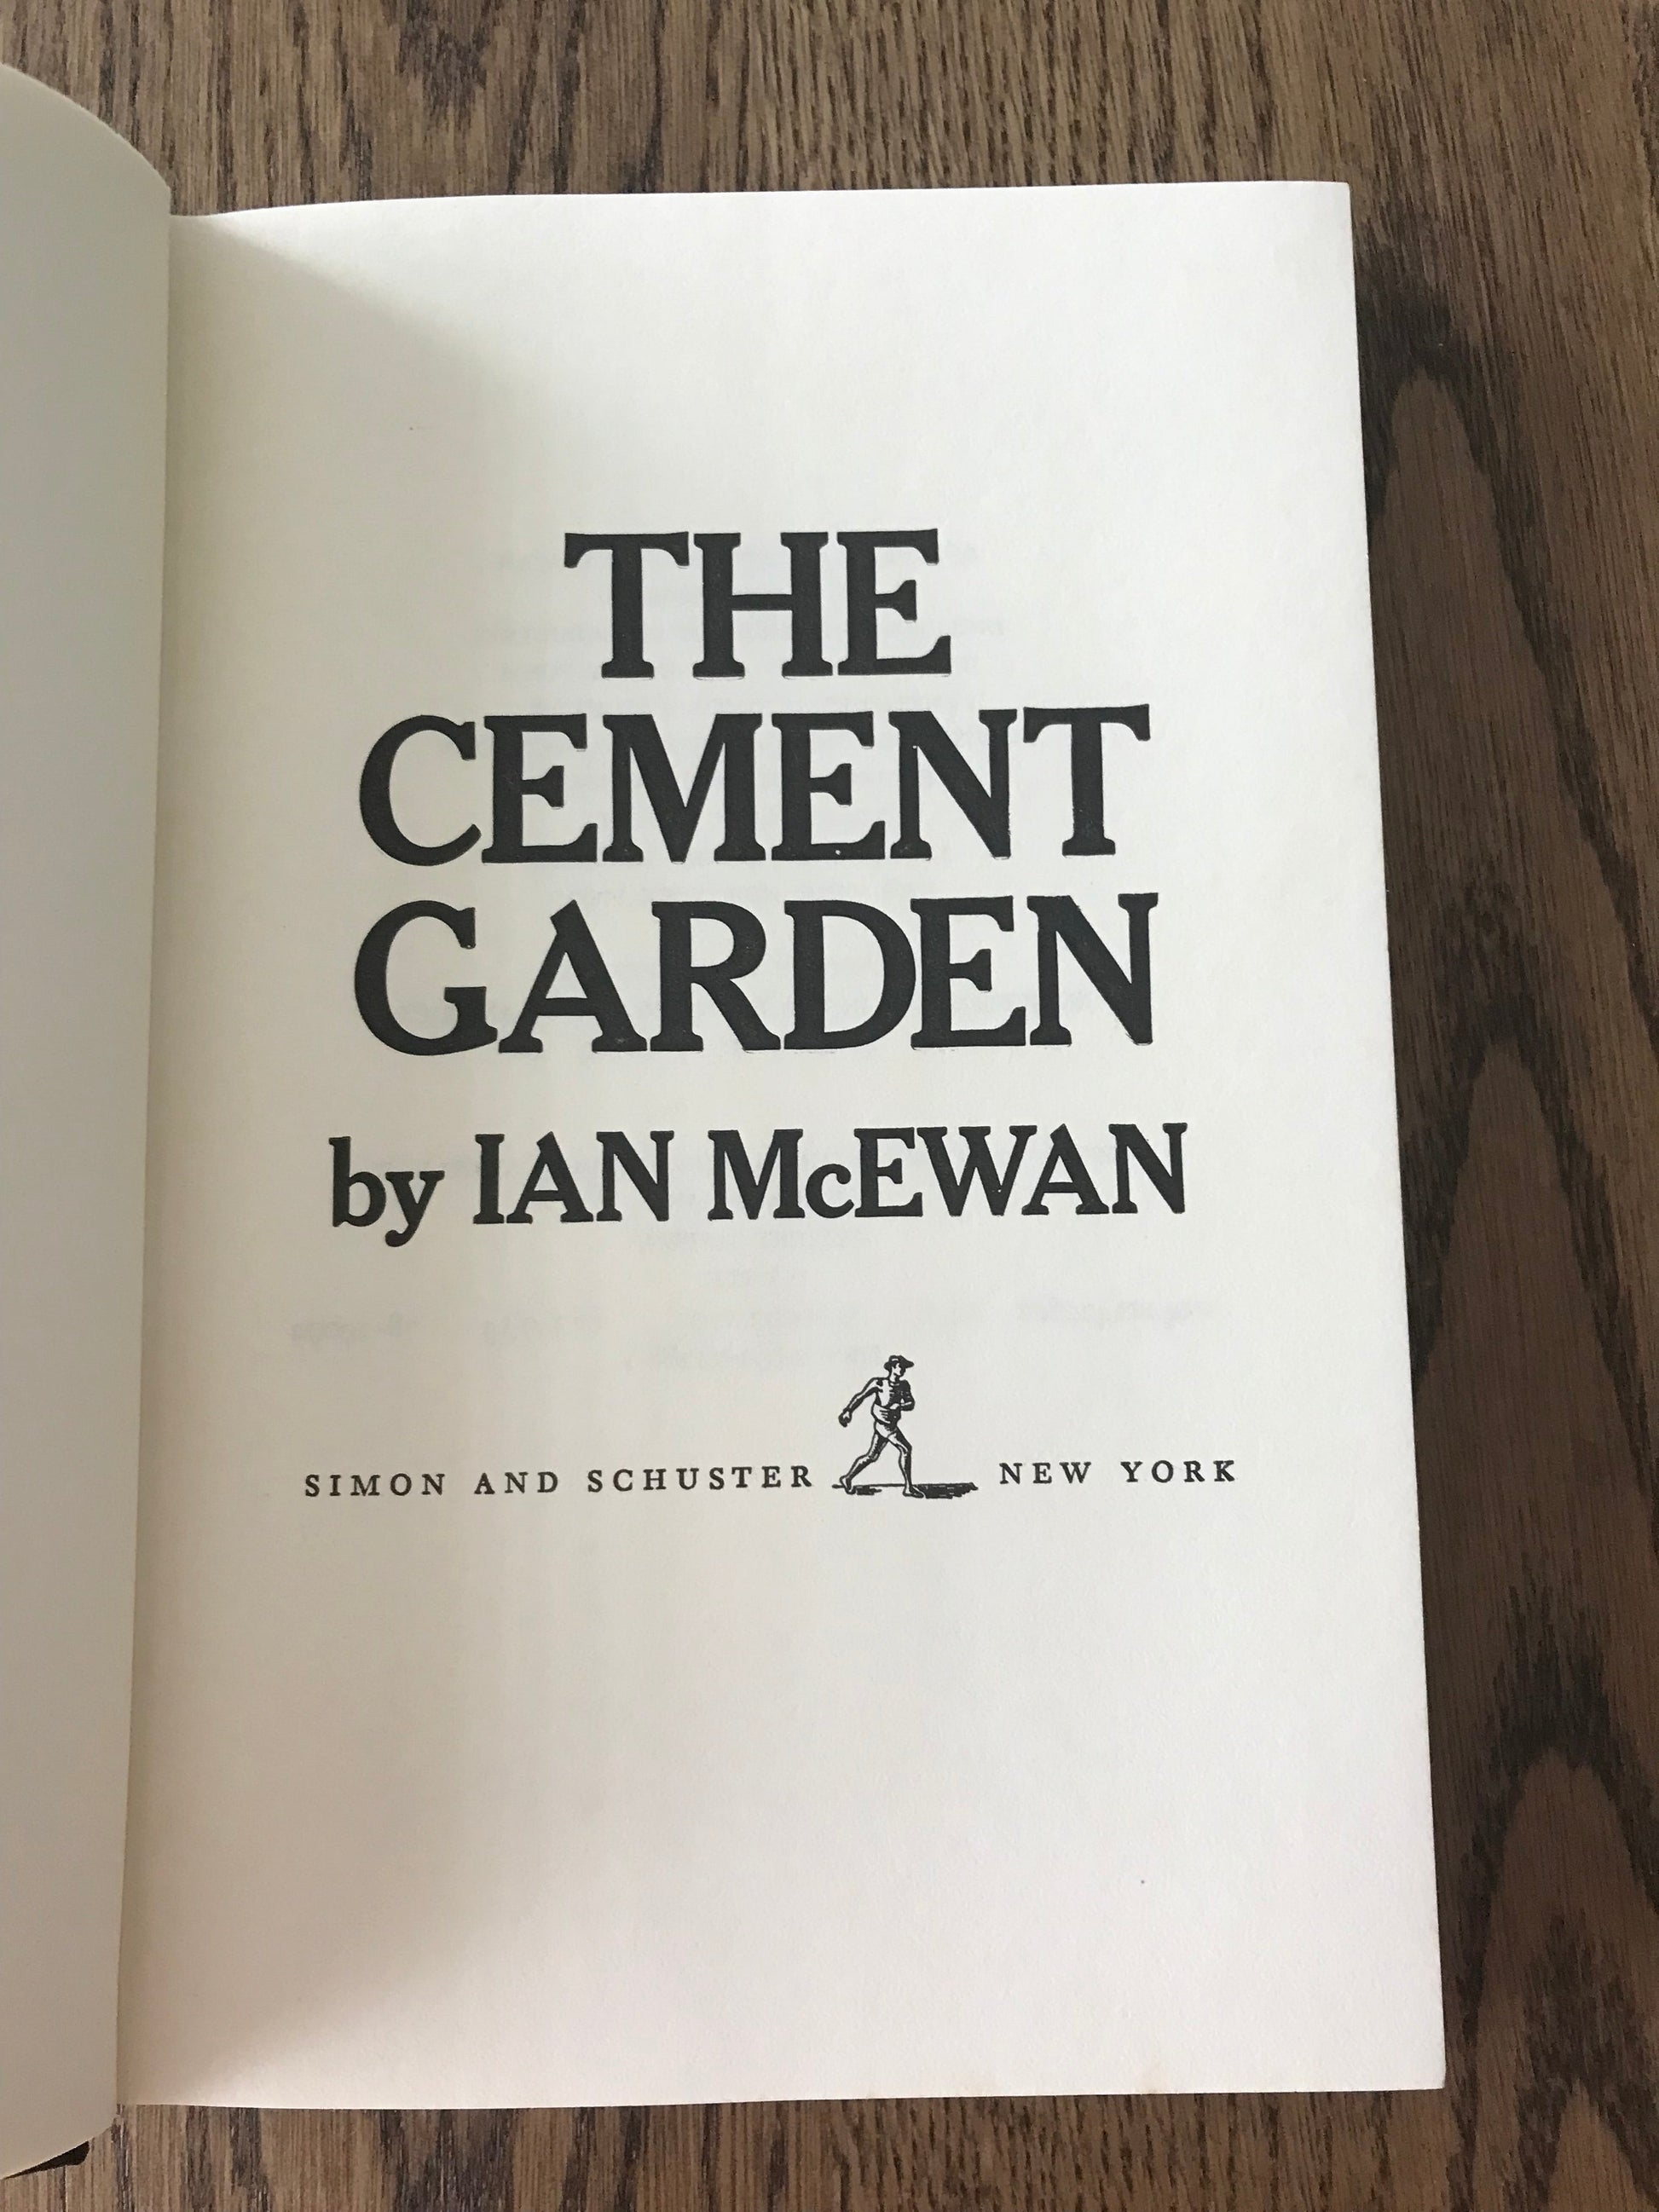 THE CEMENT GARDEN - IAN MCEWAN BooksCardsNBikes